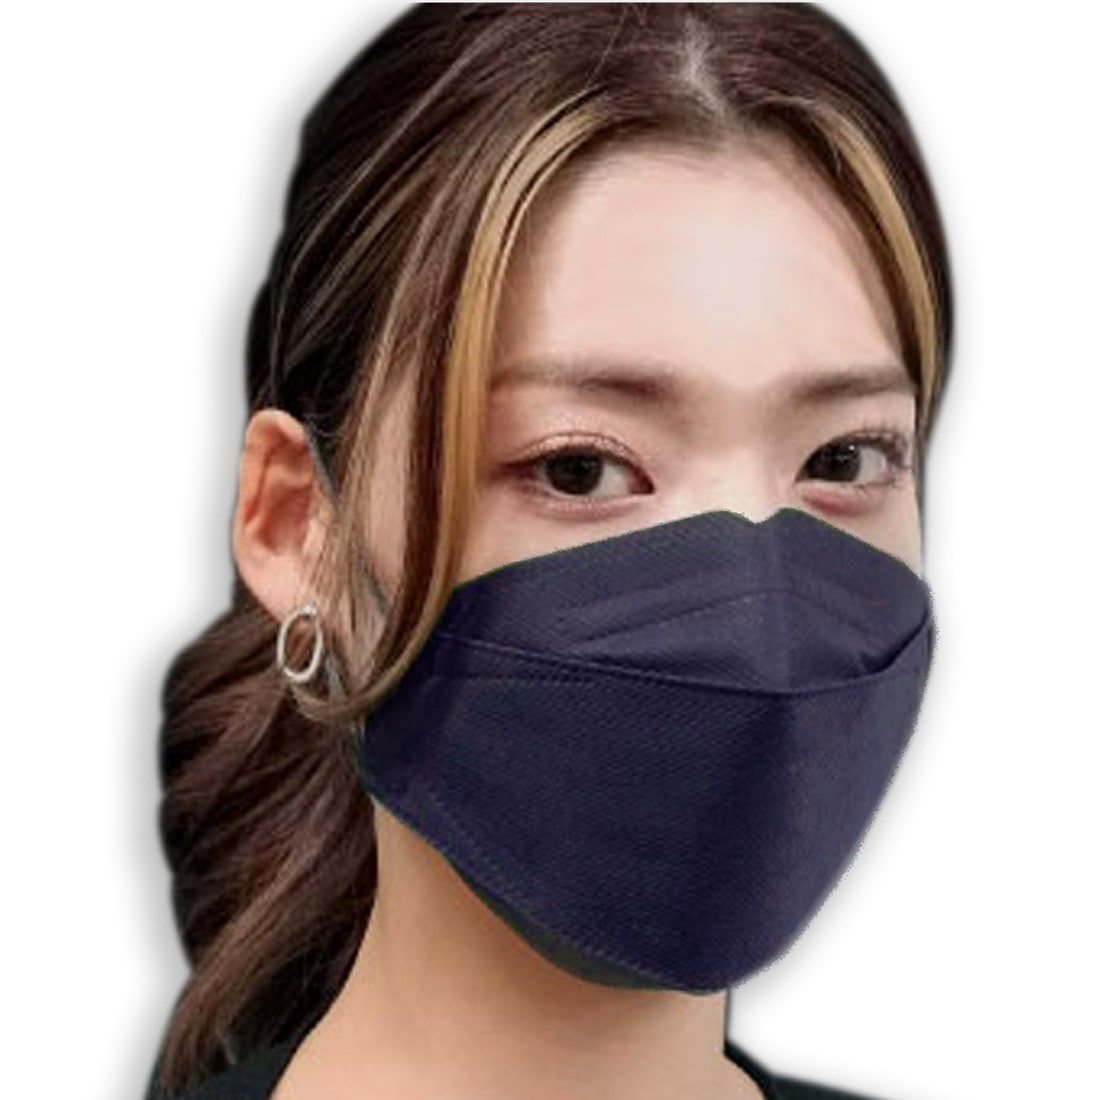 不織布マスク 立体  血色 カラー 日本製 J-95 サージカルマスク 30枚入 標準 全11色 医療用 JIS規格適合 4層 飛沫 花粉 PM2.5 個包装 おしゃれ 通年用 大人 女性 男性 標準 ネイビー